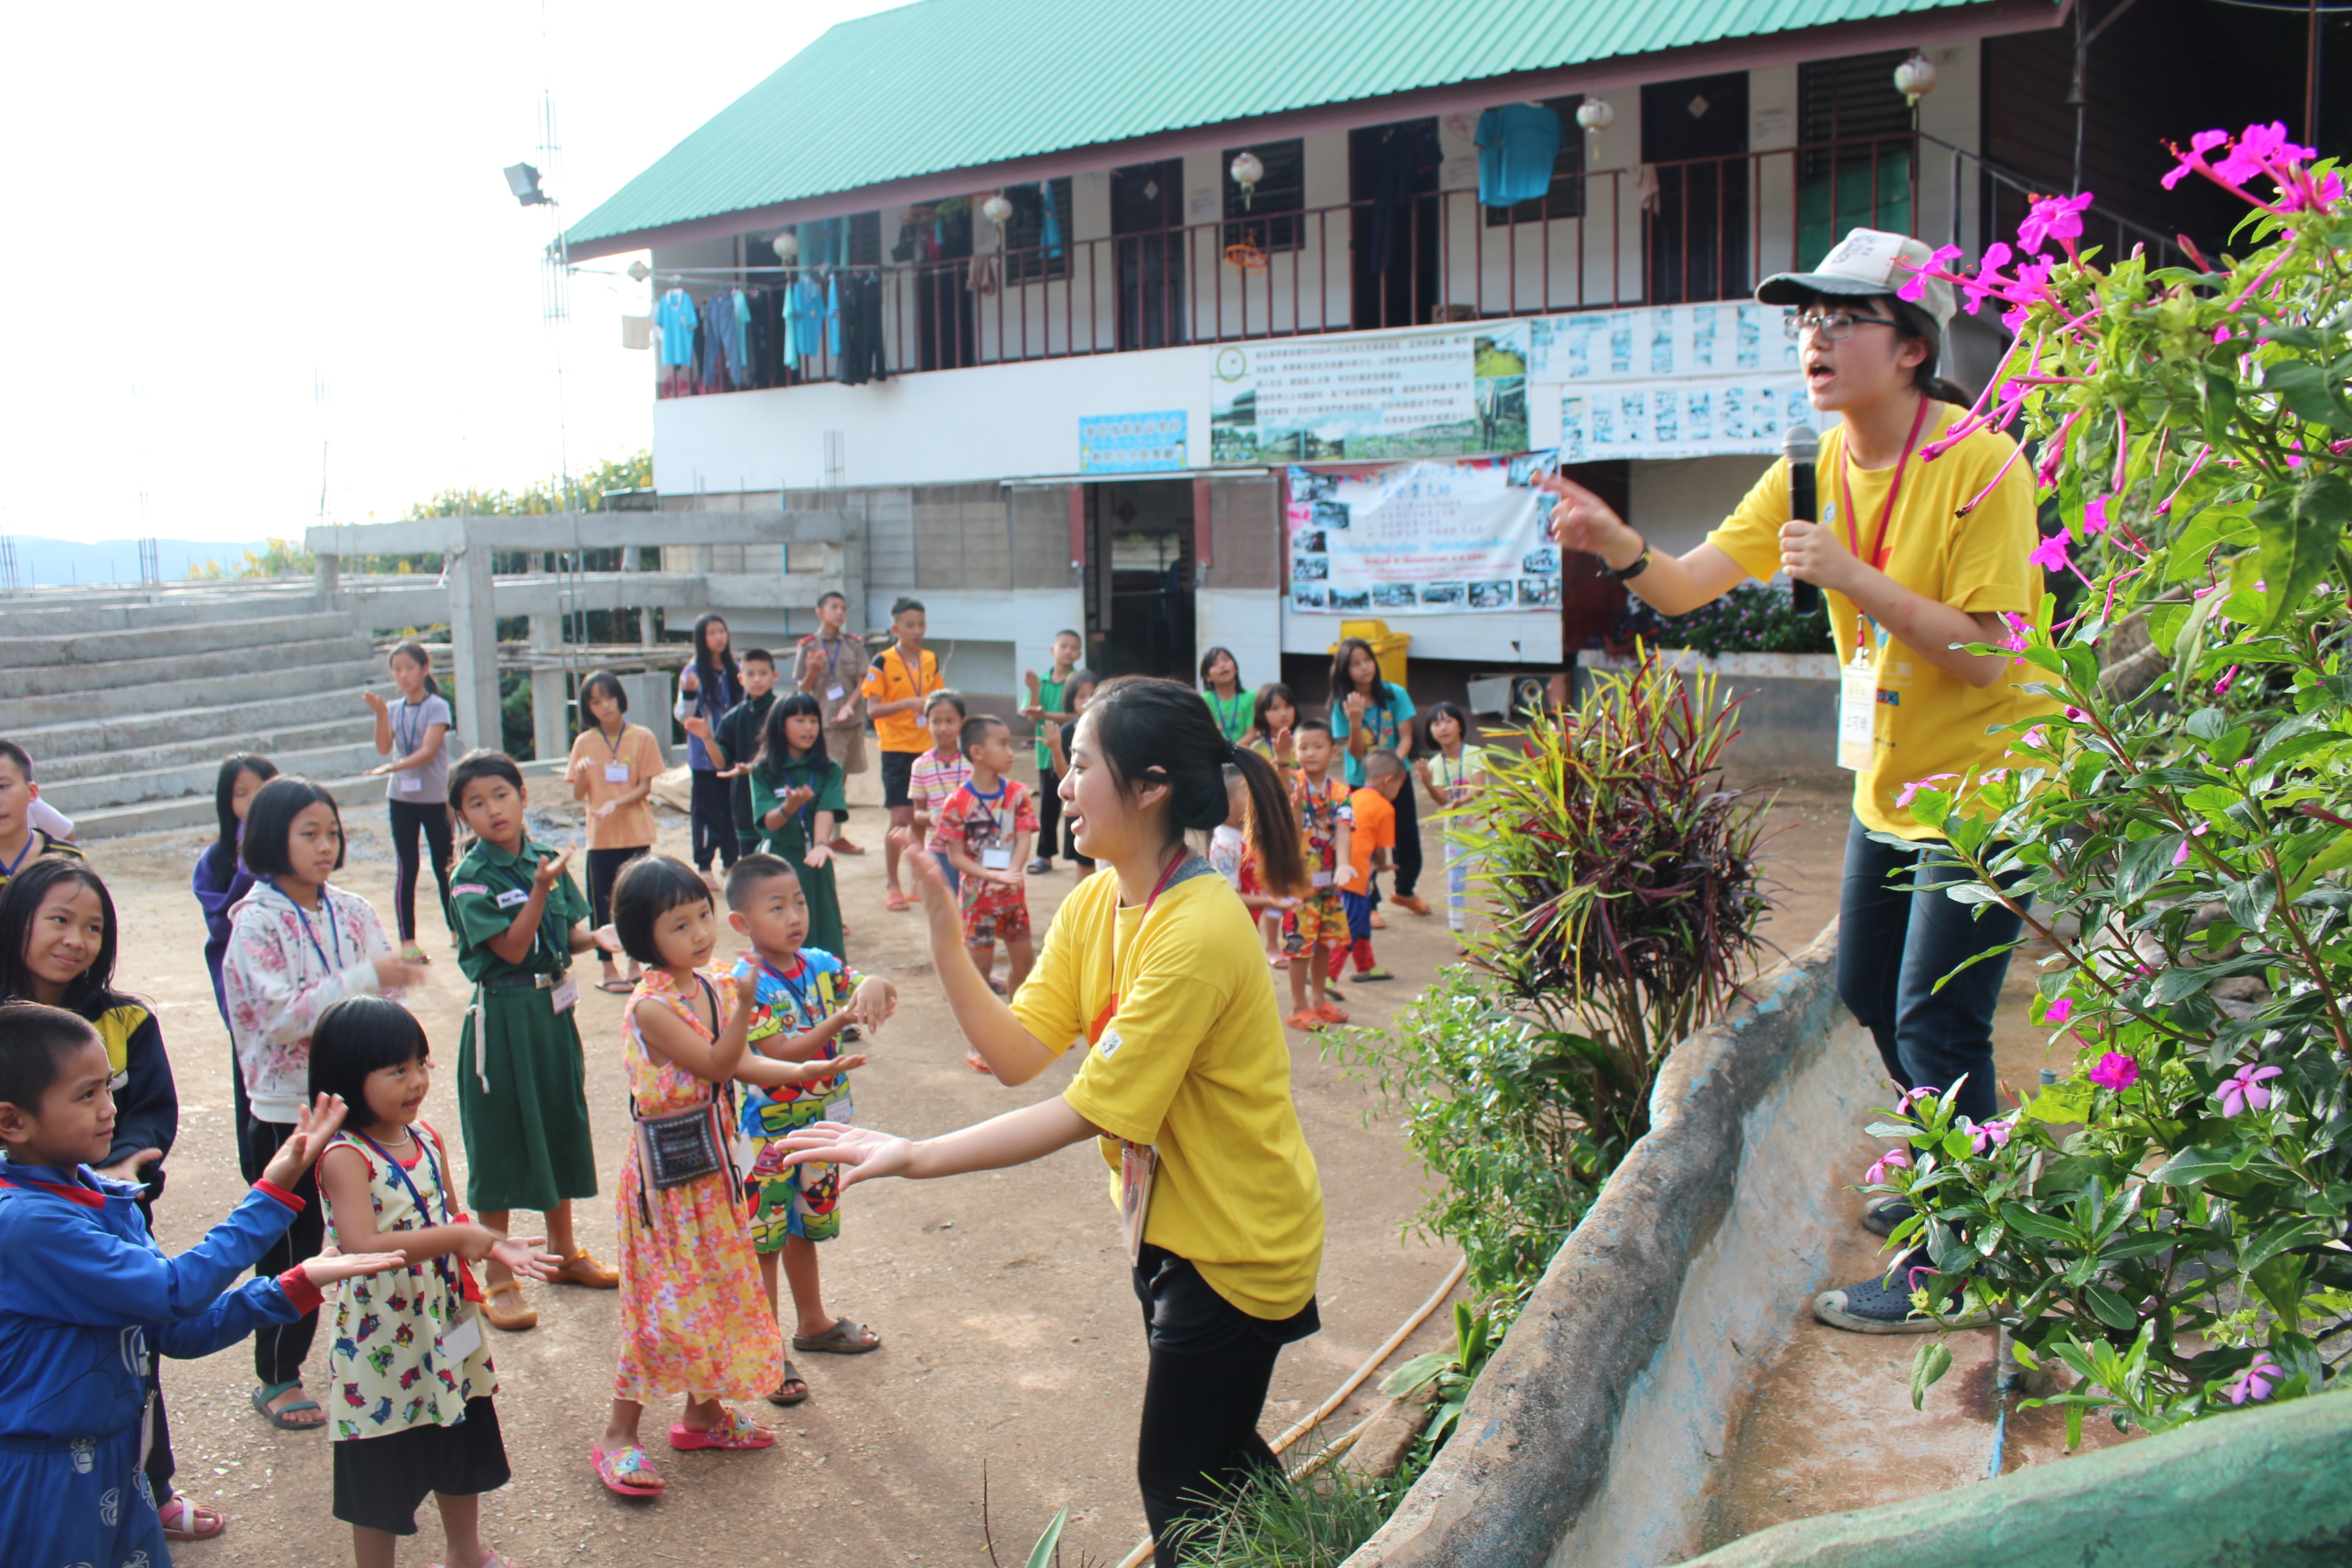 中華非營利組織發展協會「真愛中華志工服務隊」團隊成員江可晴(右1持麥克風者)於泰國清萊府象苗國小帶領小朋友進行肢體律動。